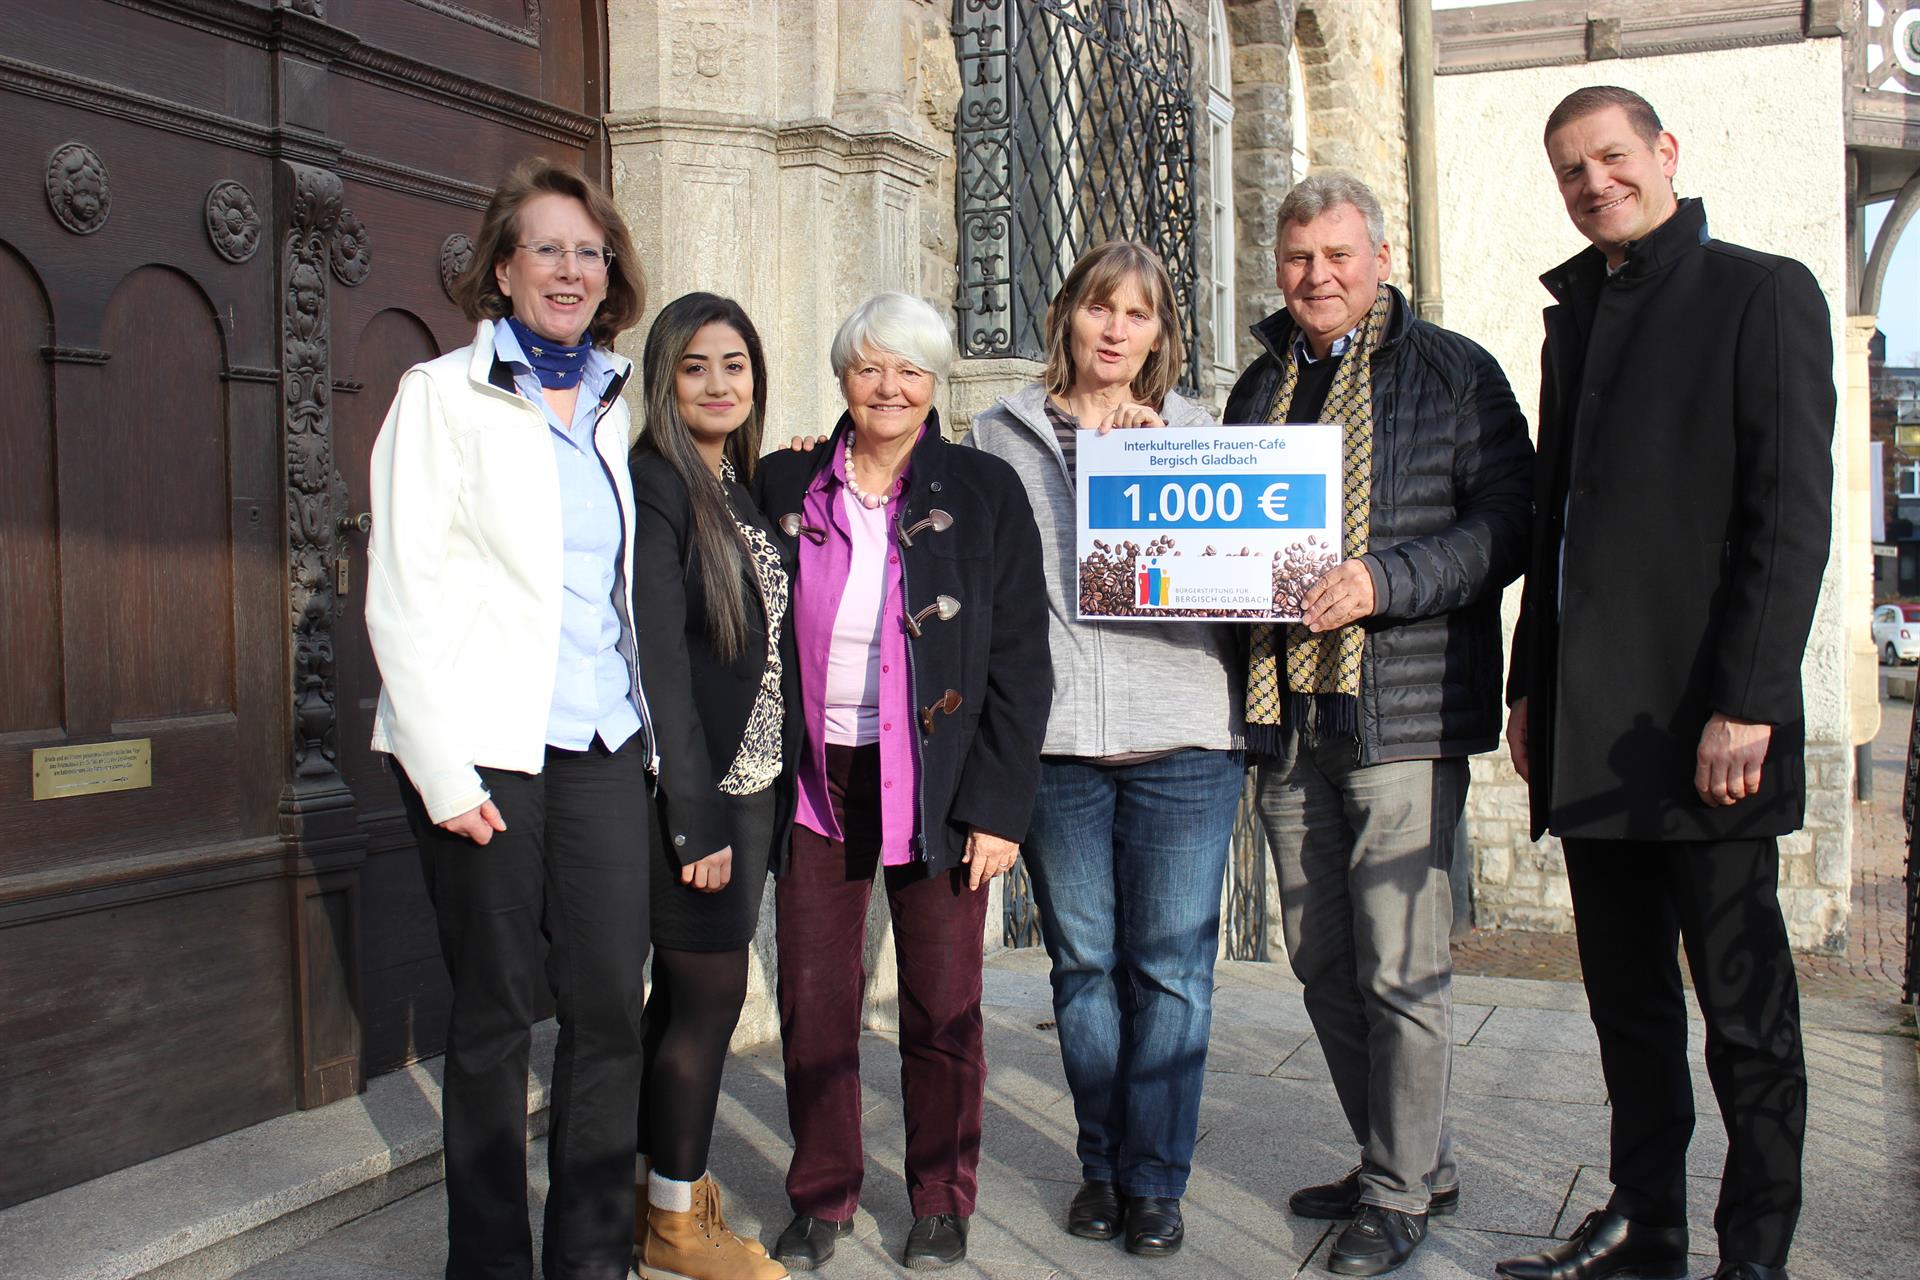 Bürgerstiftung Bergisch Gladbach unterstützt  das Interkulturelle Frauencafé mit 1.000 €